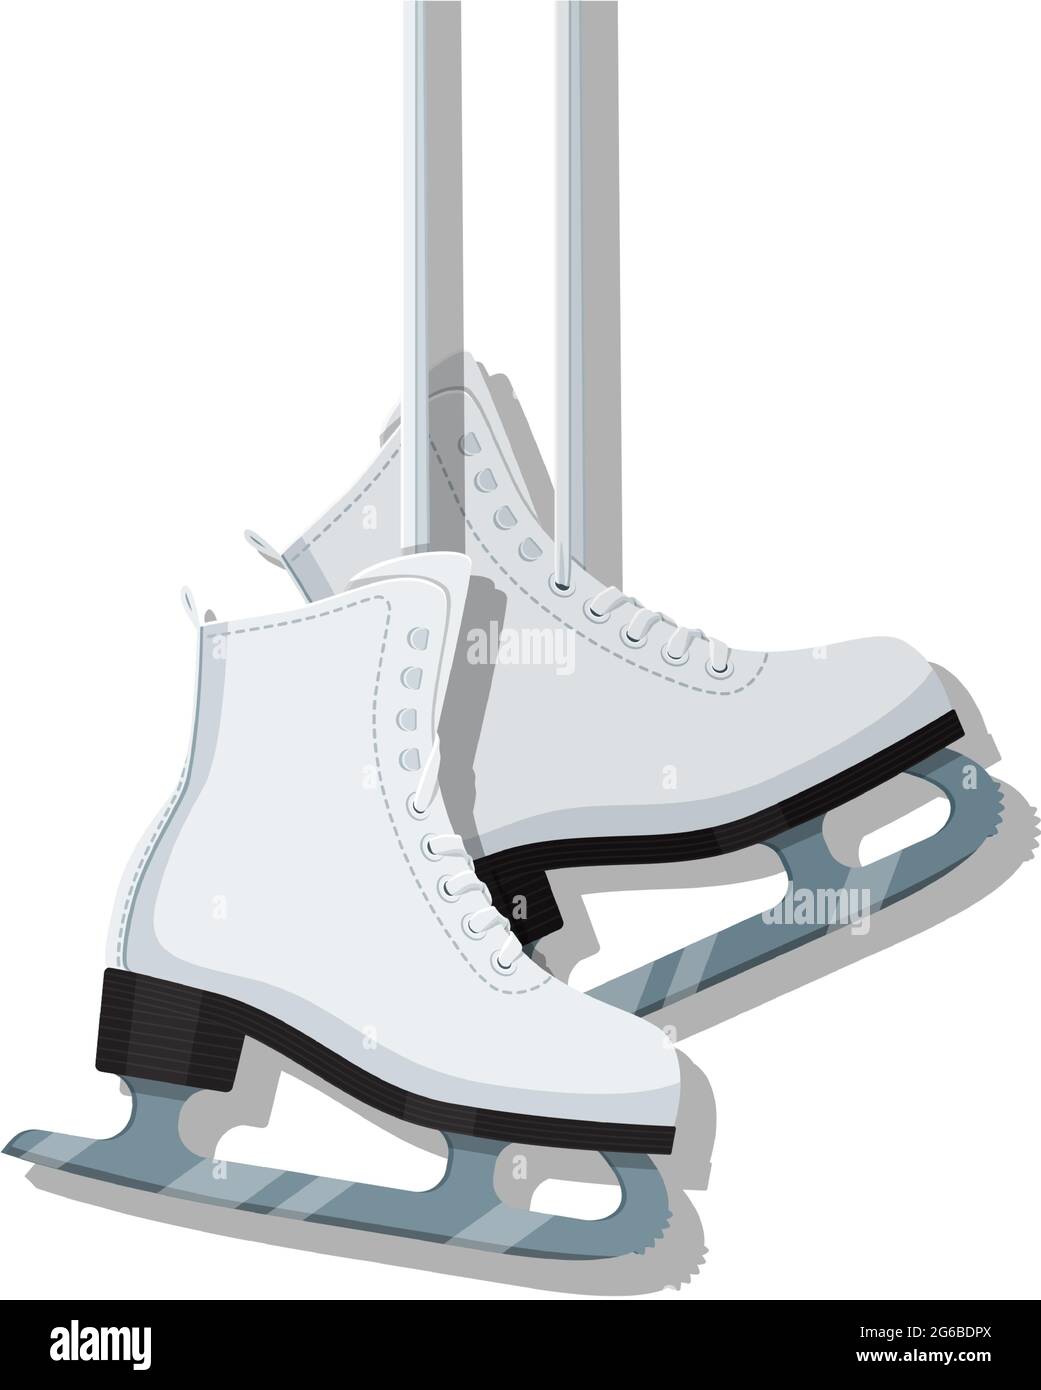 La figurine de glace est glissée pour l'illustration du vecteur de patinoire sur le blanc Illustration de Vecteur